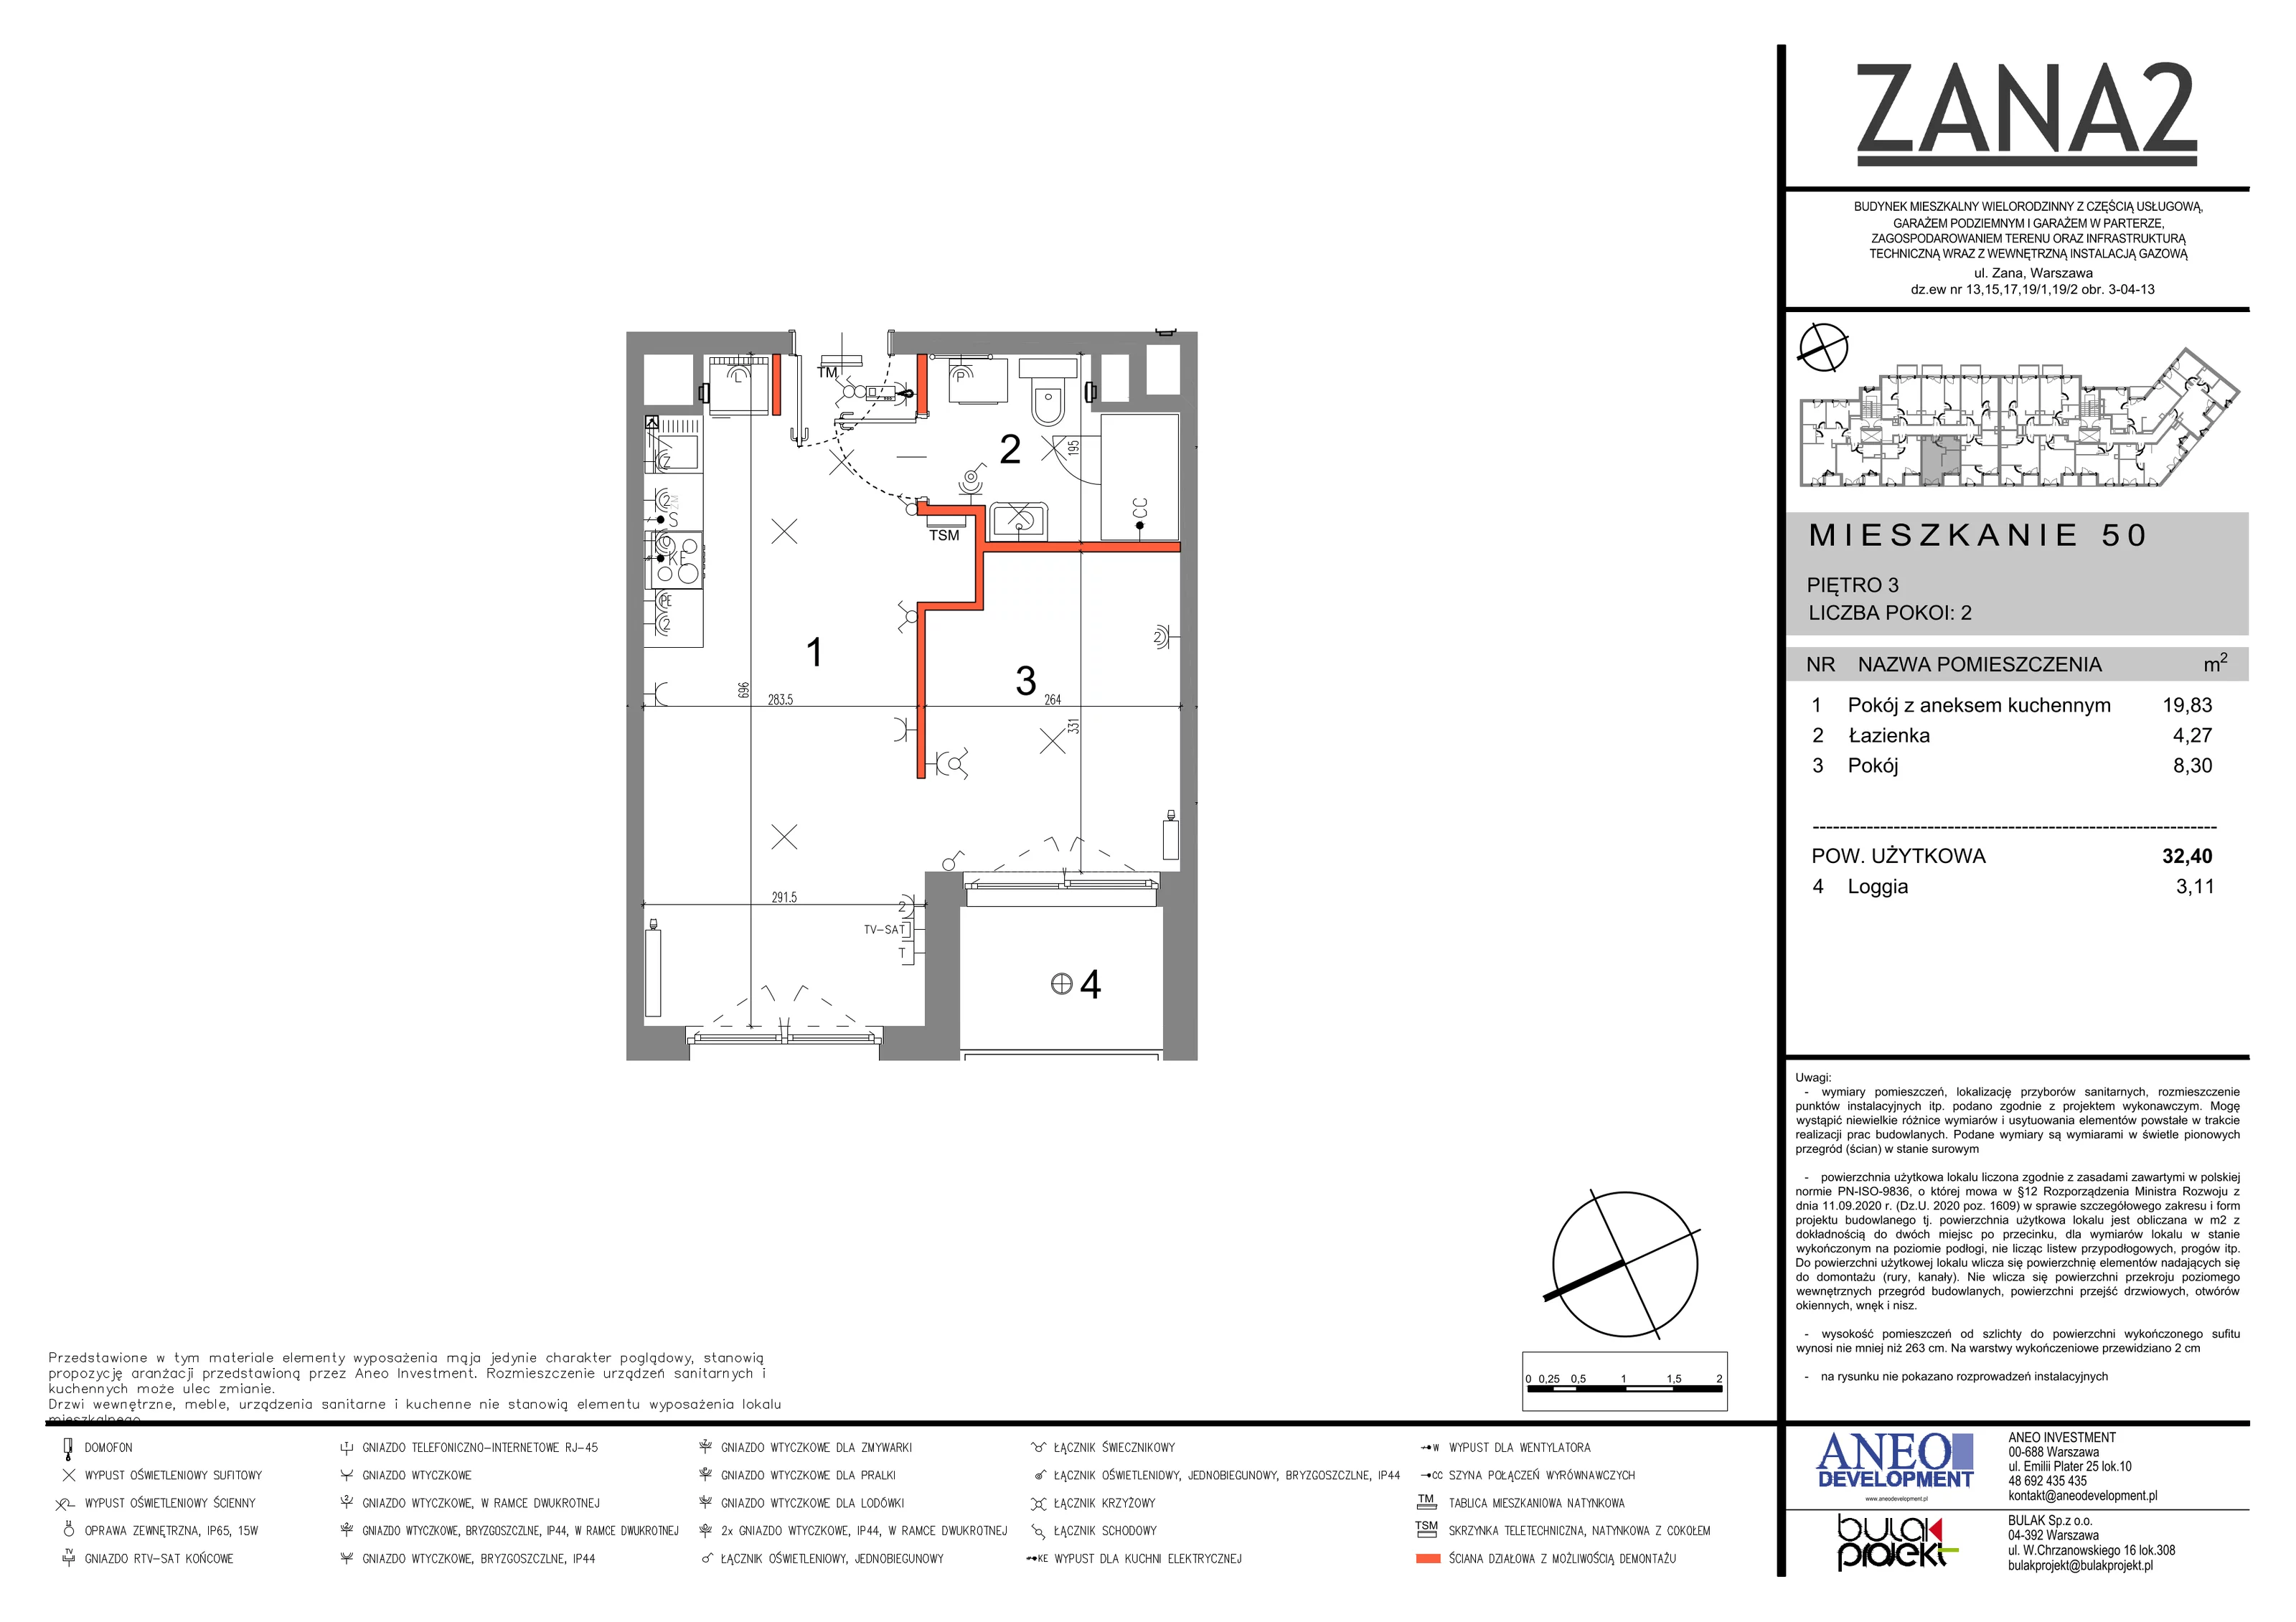 Mieszkanie 32,93 m², piętro 3, oferta nr 50, Zana 2, Warszawa, Praga Południe, Gocławek, ul. Tomasza Zana